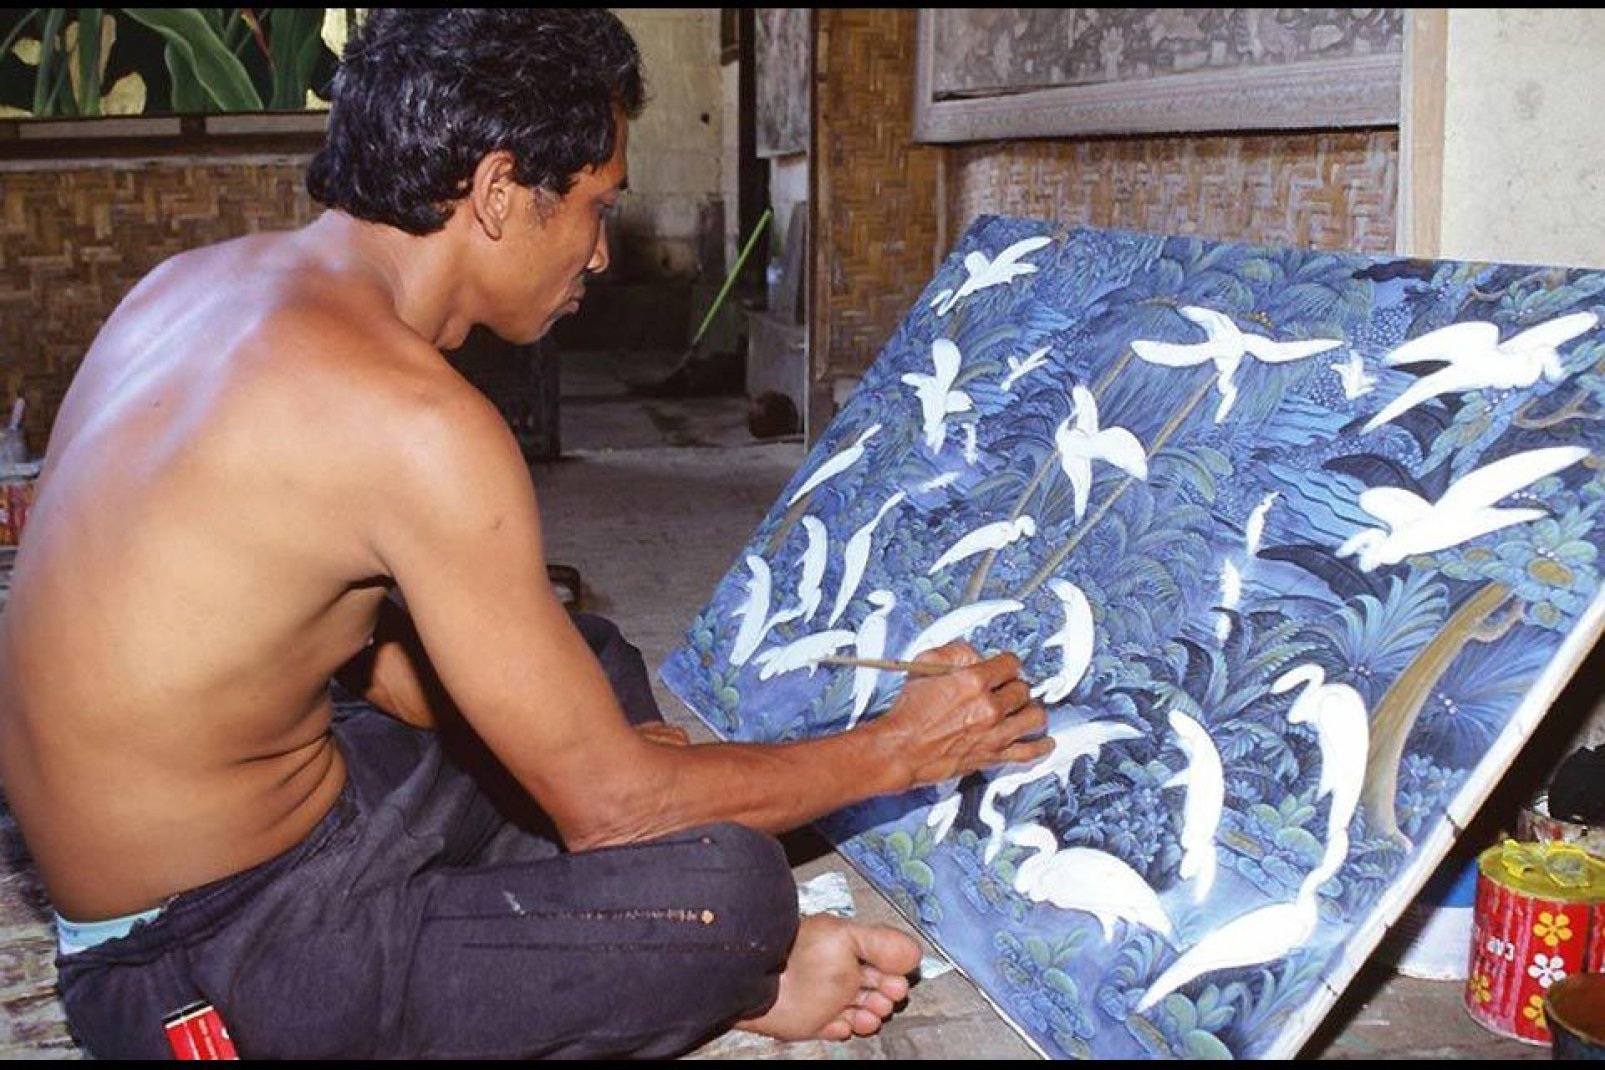 L'art coule dans les veine d'Ubud, de nombreuses galeries exposent les talents locaux.